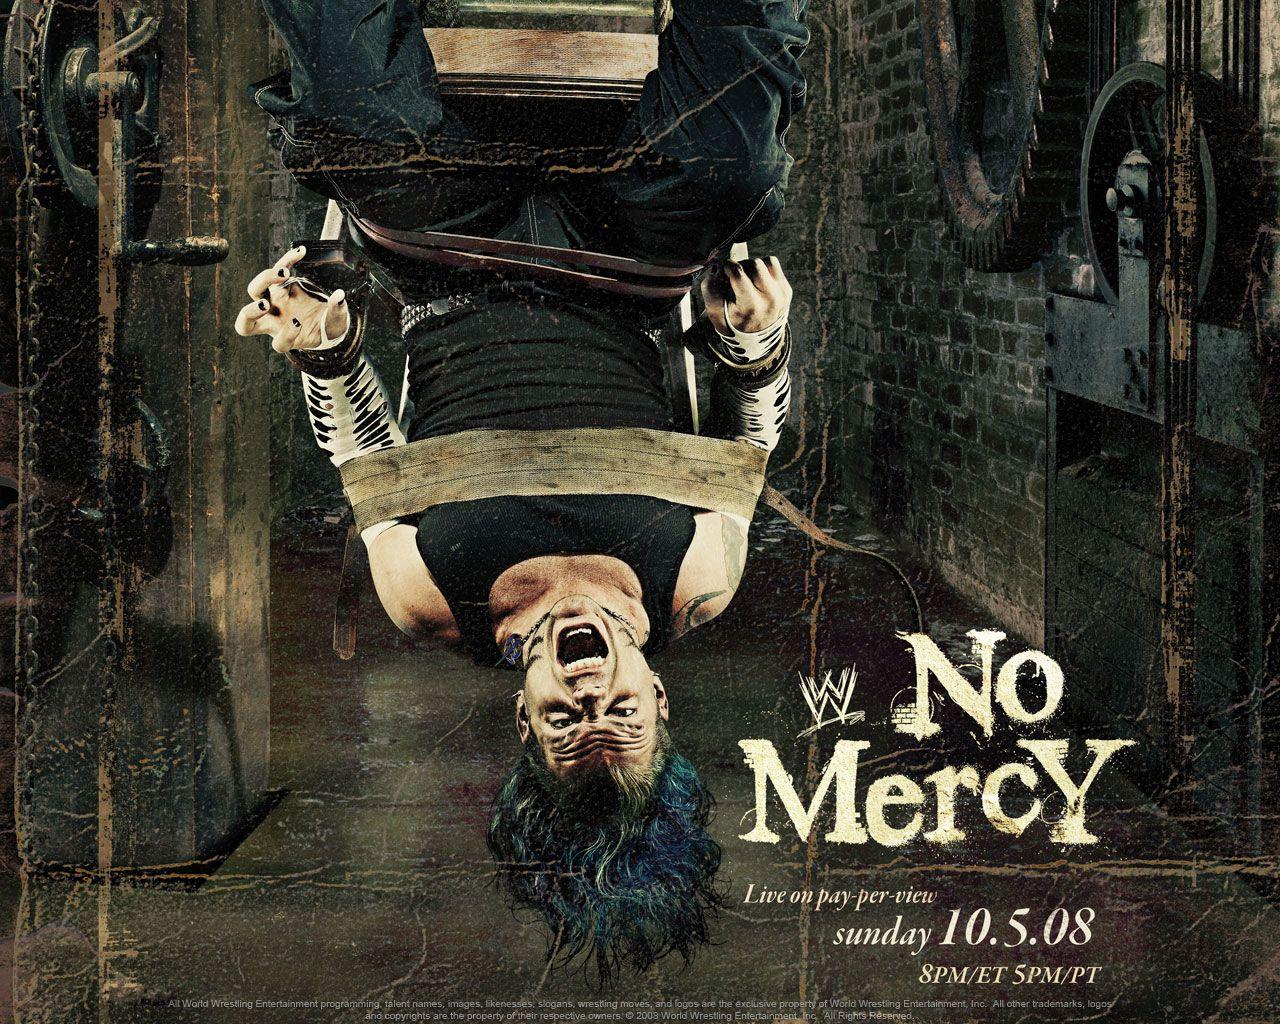 No Mercy 2008 WWE PPV with Jeff Hardy